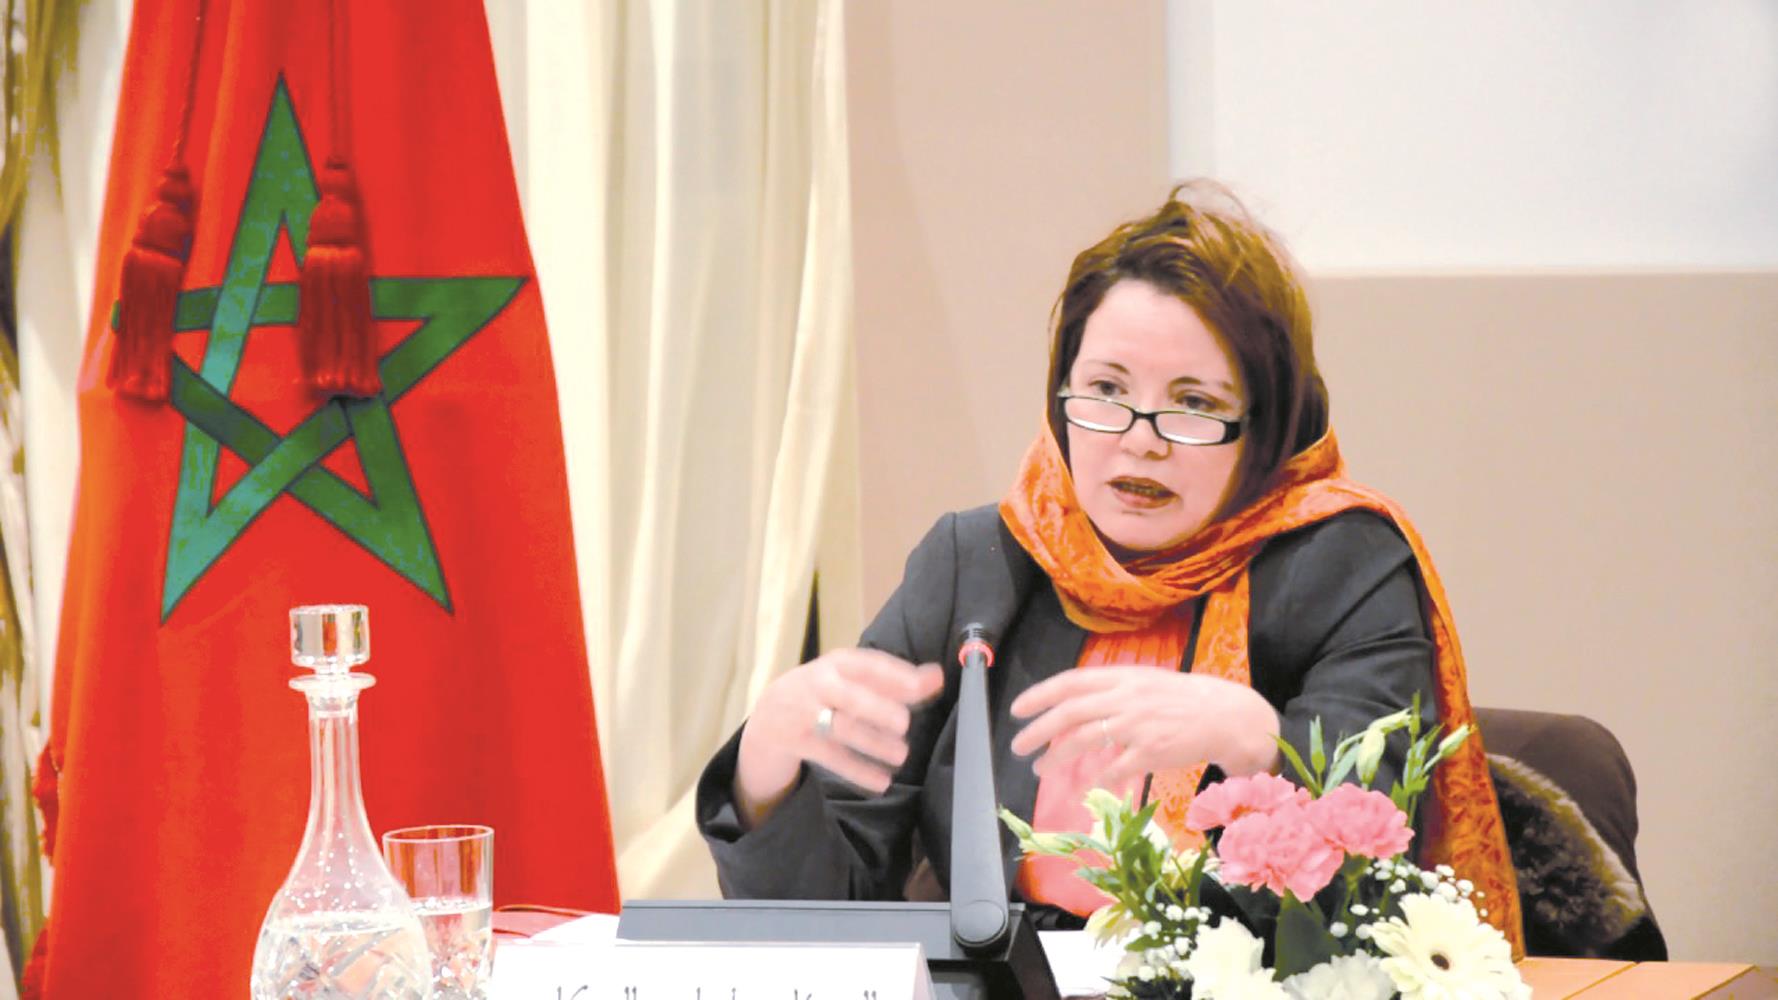 L'ambassadeur du Maroc près le Saint-Siège souligne la contribution fondamentale de l'Appel d'Al Qods à la paix dans la région